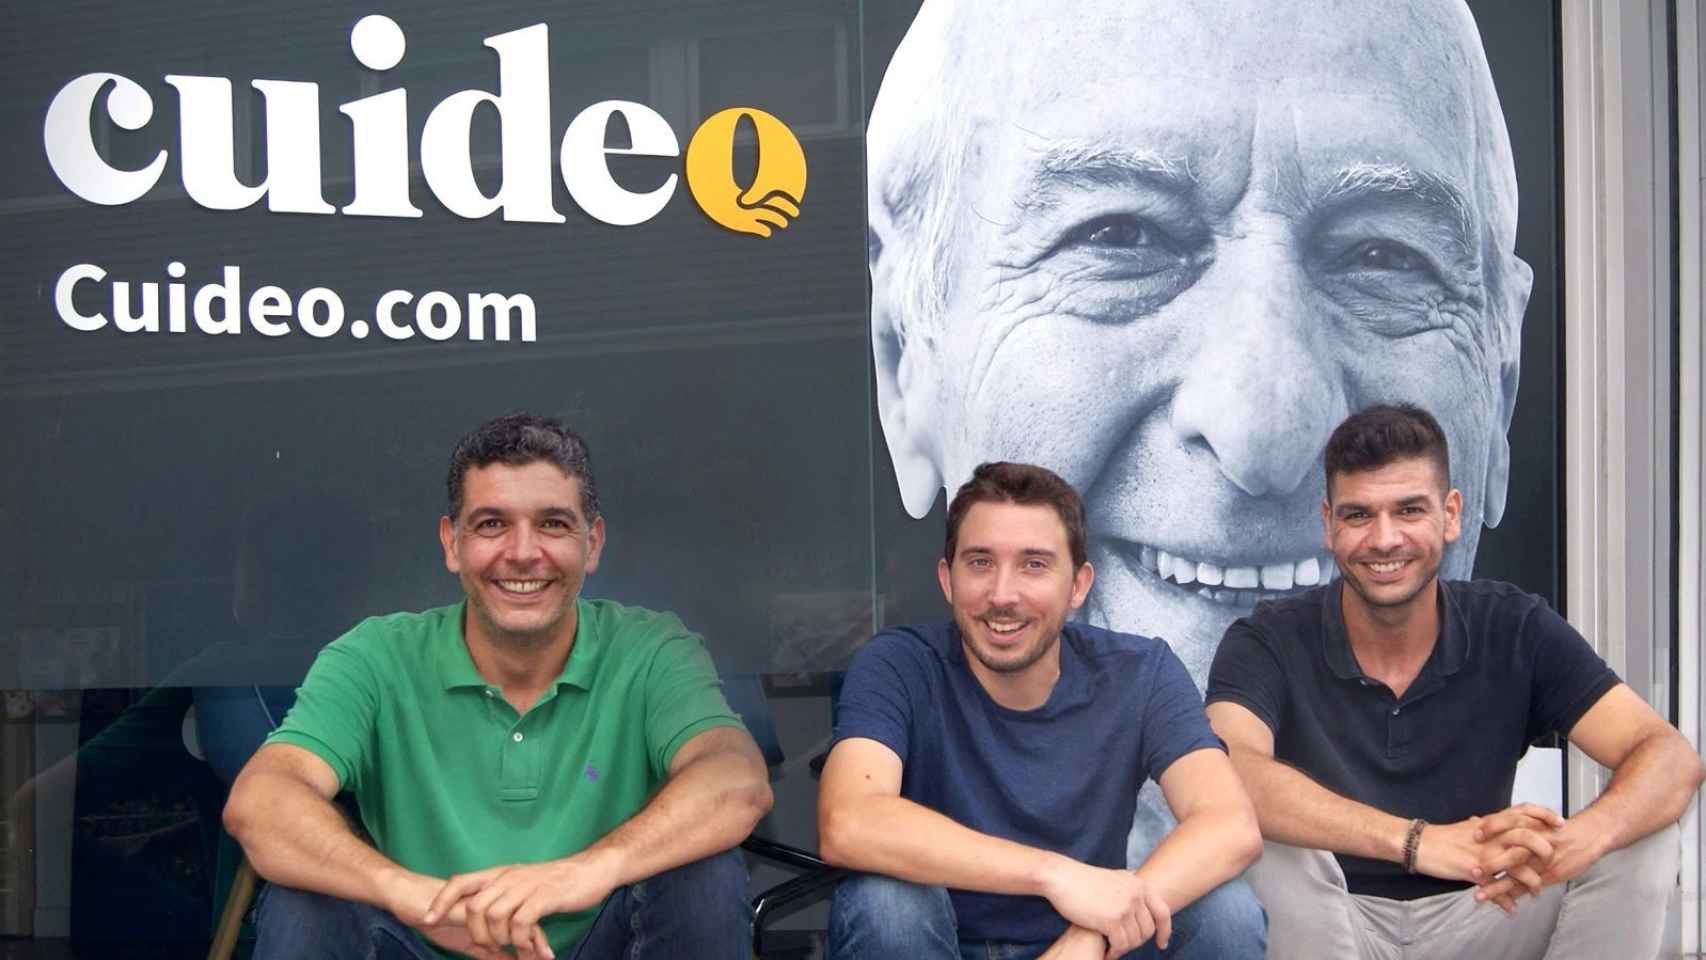 Los fundadores de Cuideo Adrià Buzón y los hermanos Roberto y Alejandro Valdés